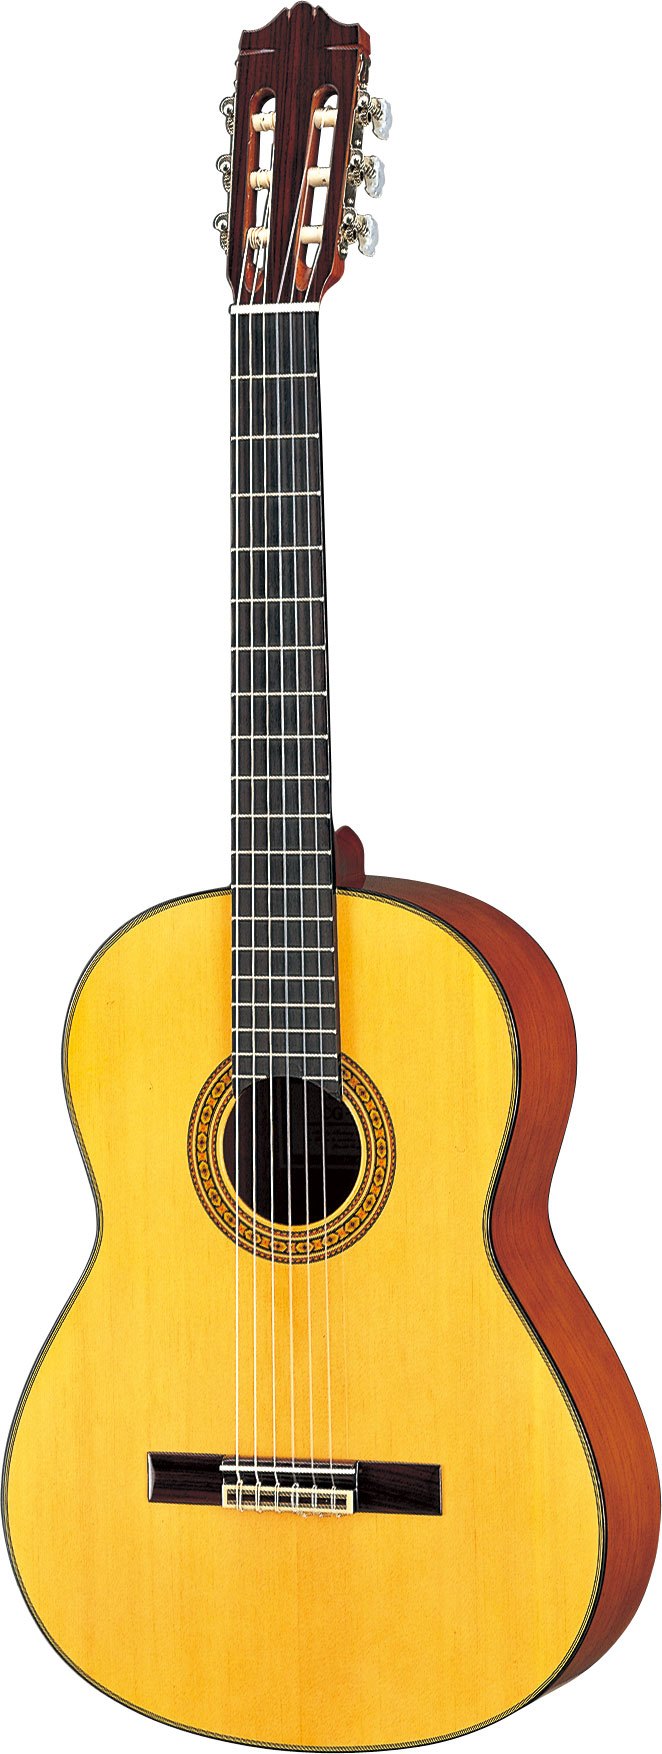 CG131S - クラシックギター・ナイロン弦ギター - 概要 - ヤマハ